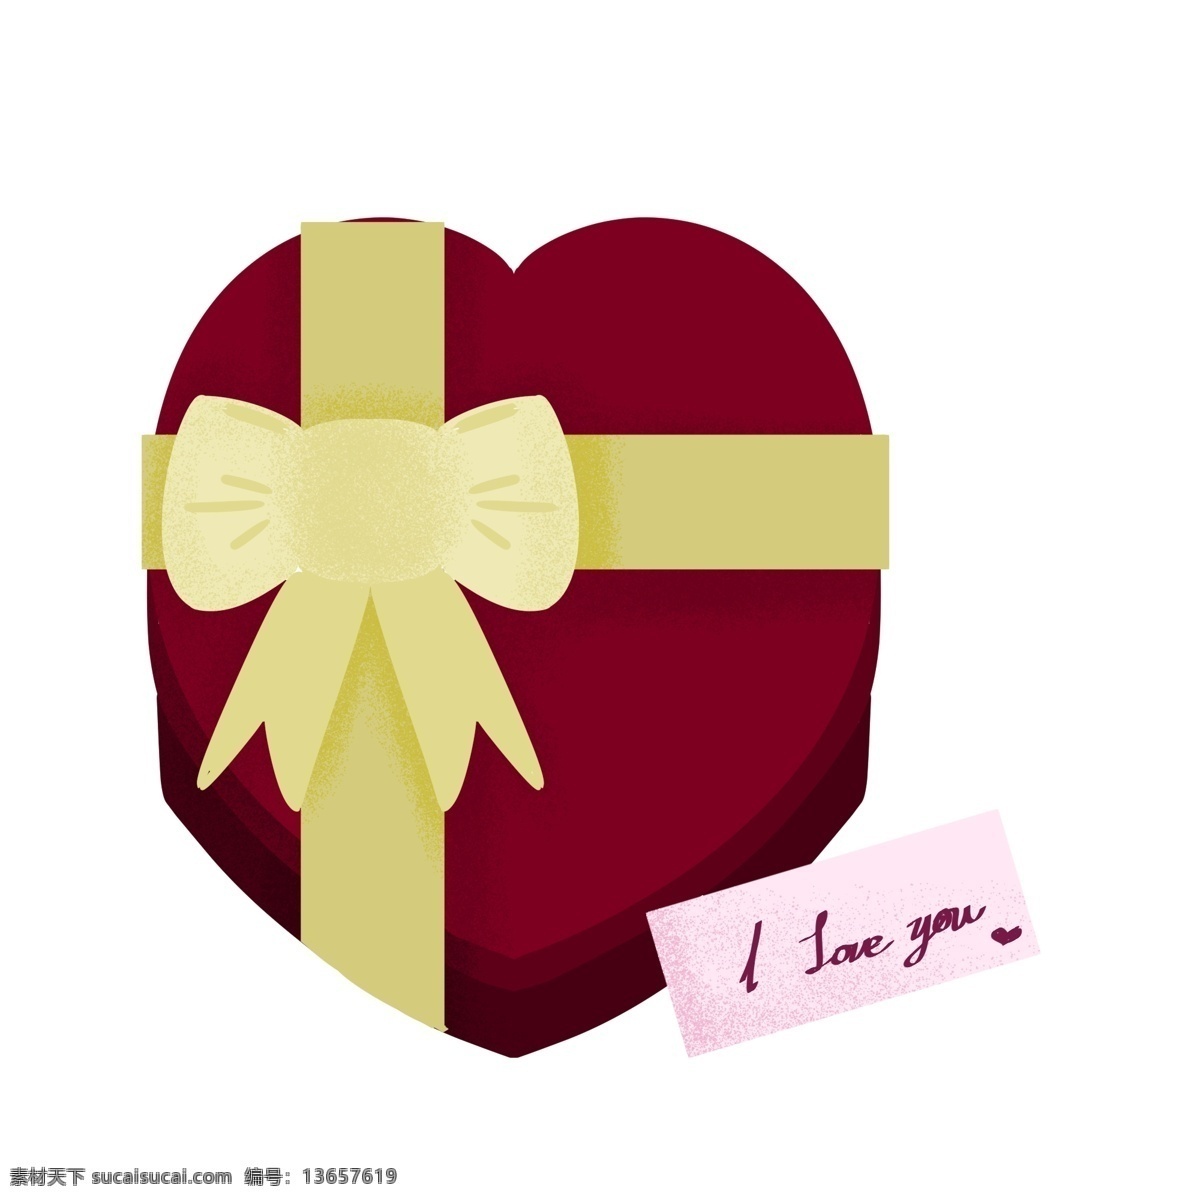 红色 浪漫 情人节 礼物 卡片 插画 情人节礼物 礼品盒 礼物盒子 红色装饰 心形礼物 蝴蝶结